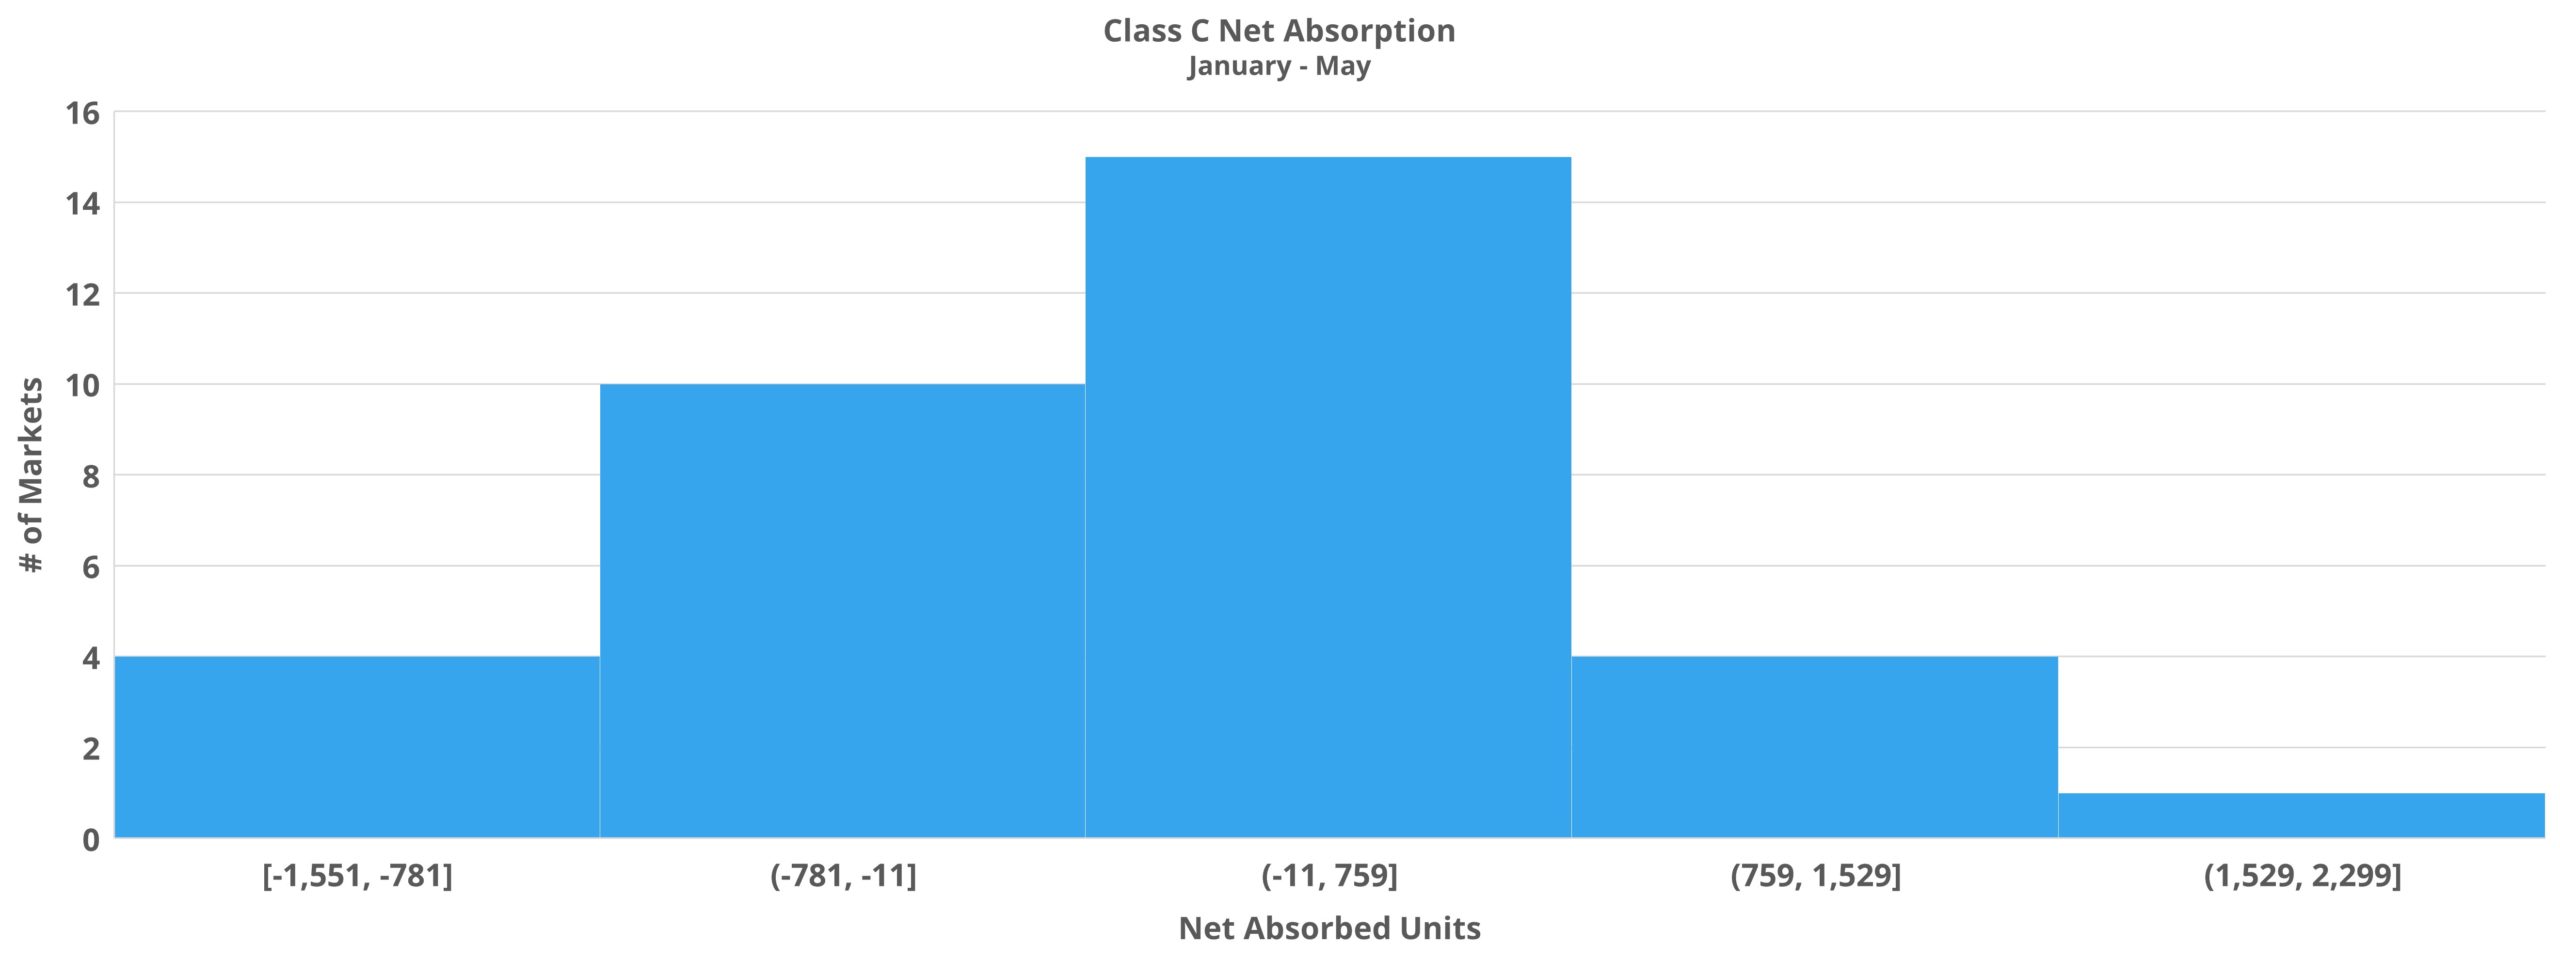 Class C Net Absorption